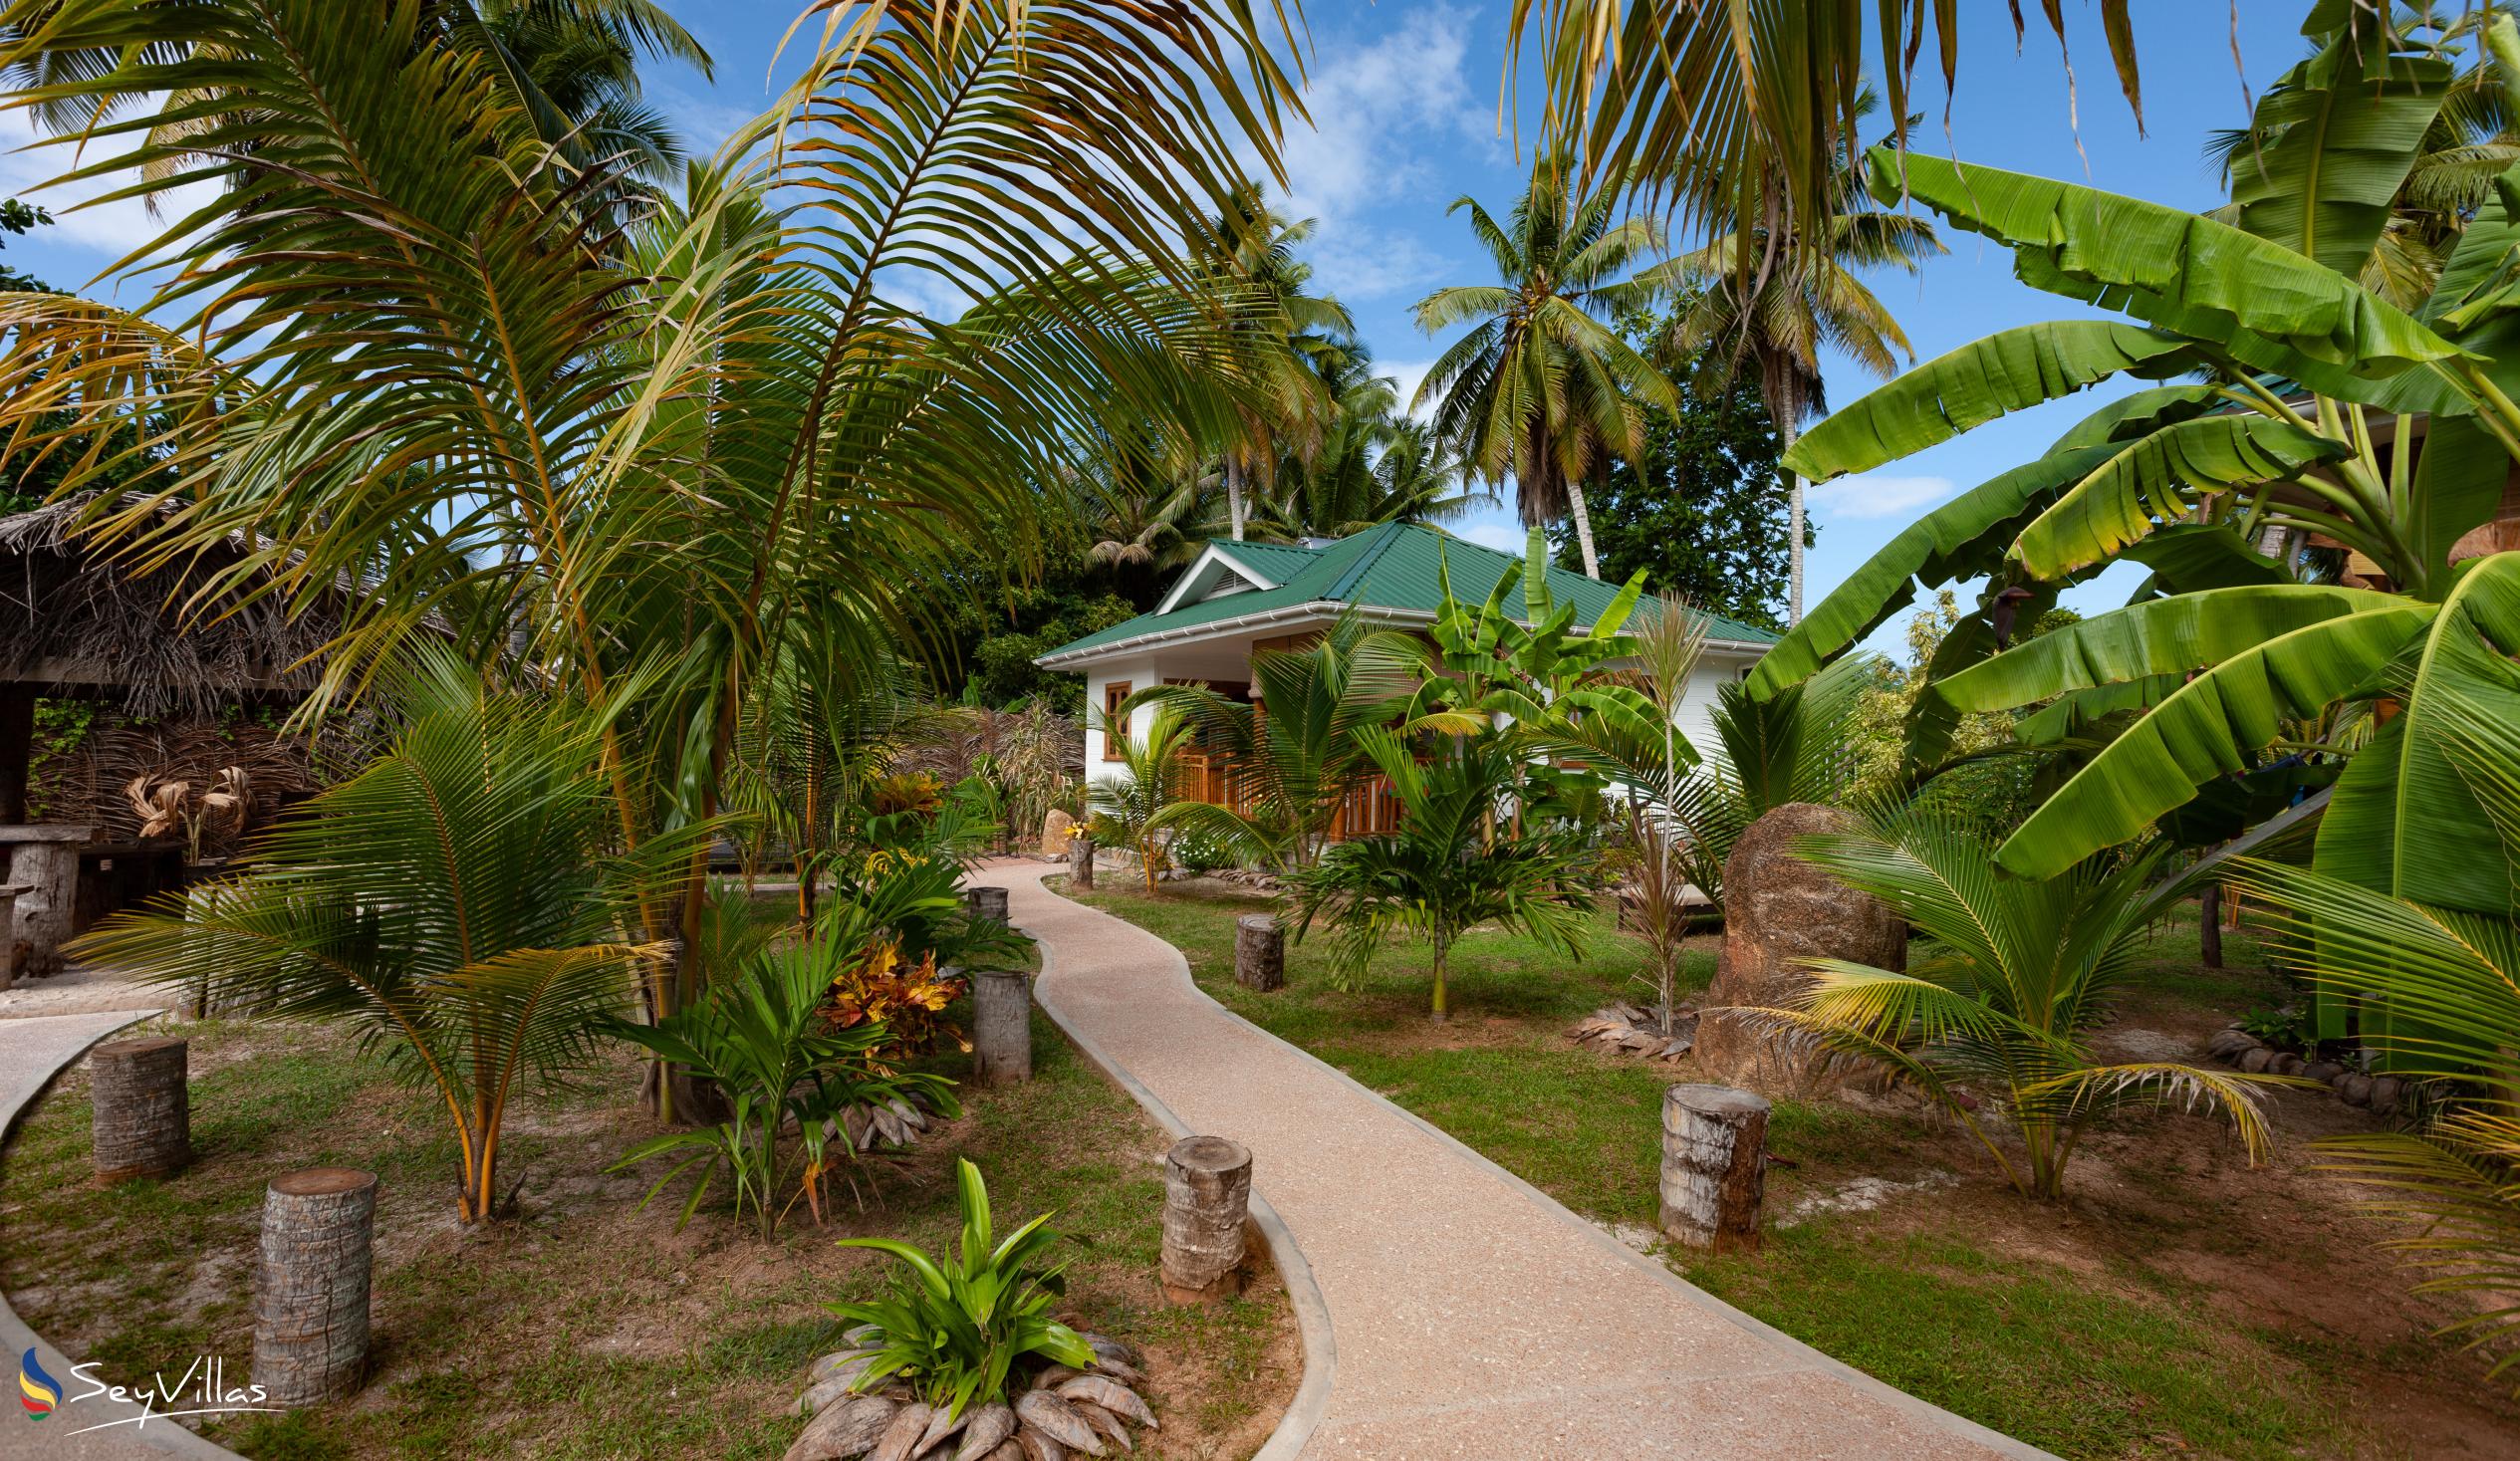 Photo 16: Coco de Mahi - Outdoor area - La Digue (Seychelles)